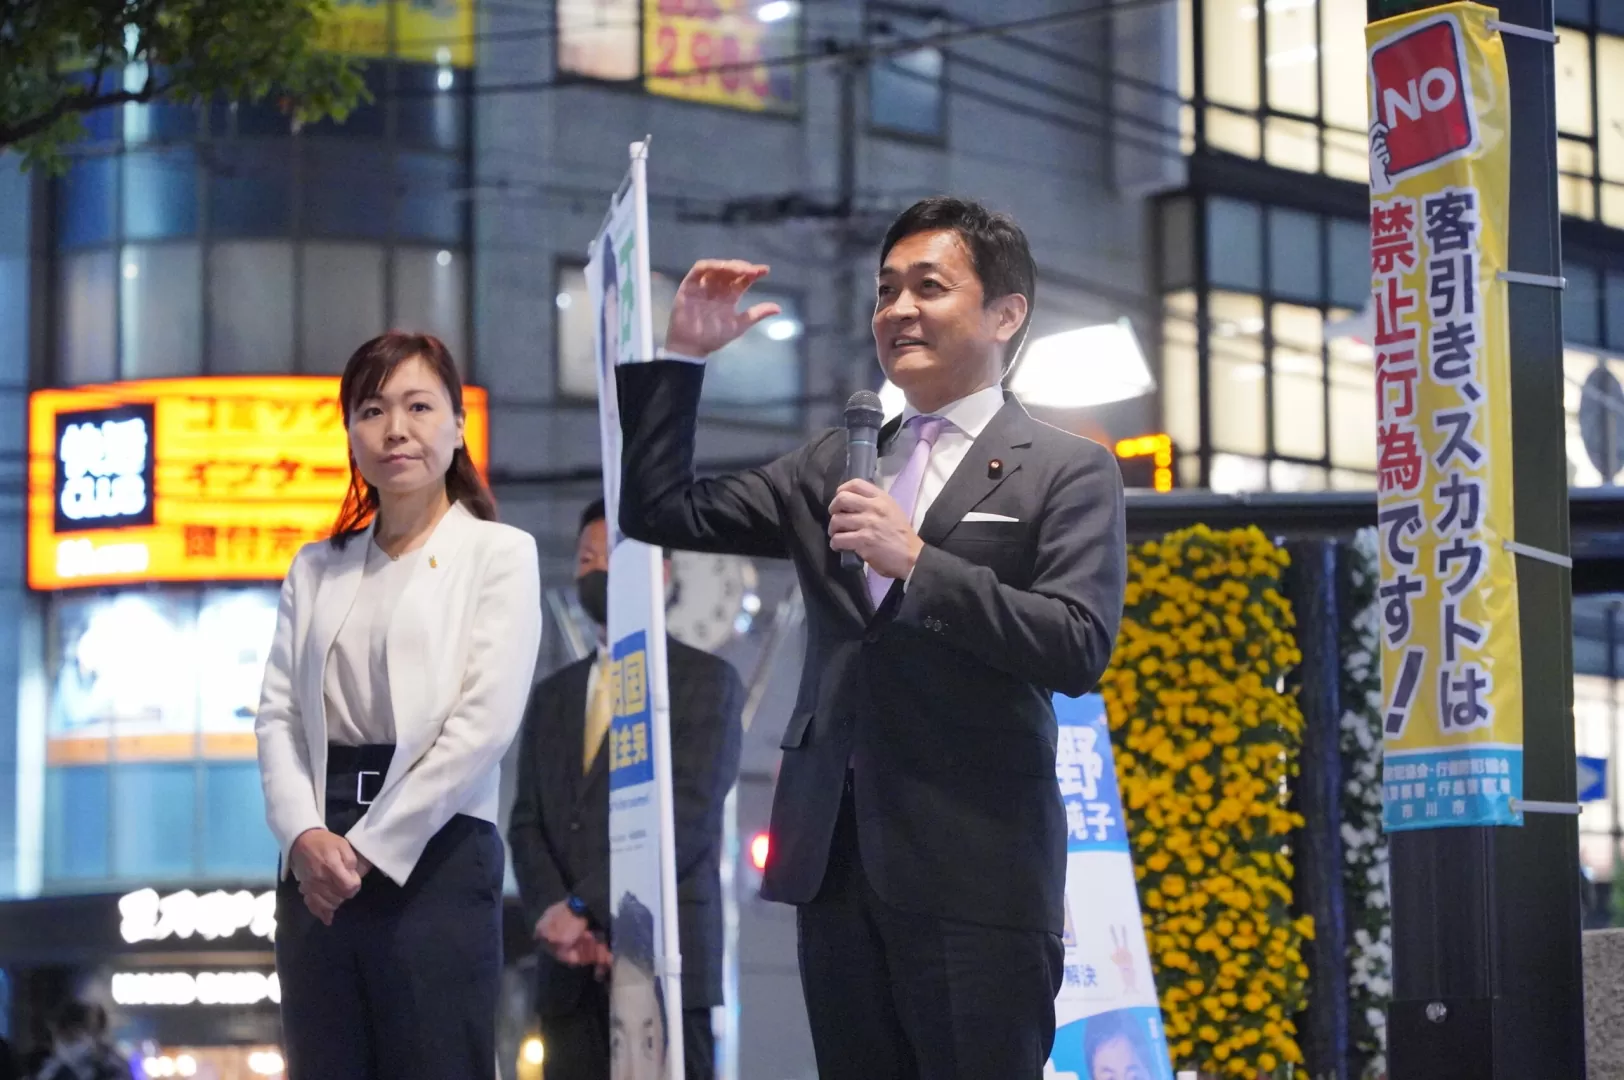 【千葉】「頑張れば給料が上がる、そんな当たり前の希望を取り戻す」玉木代表が千葉県市川市で街頭演説会に参加